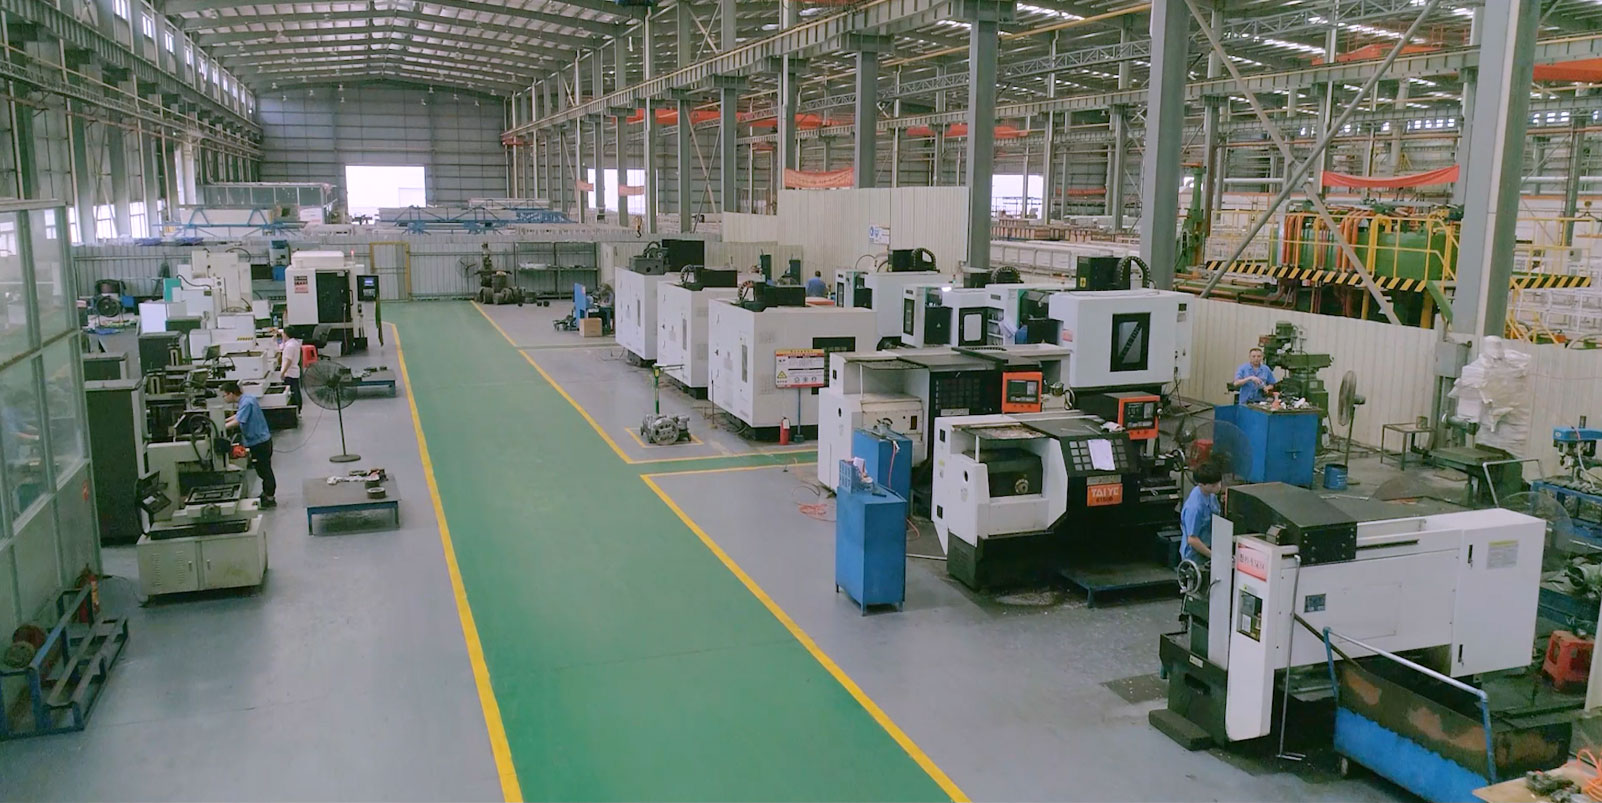 新大明鋁業工業材模具廠及2500噸擠壓機正式投產運行